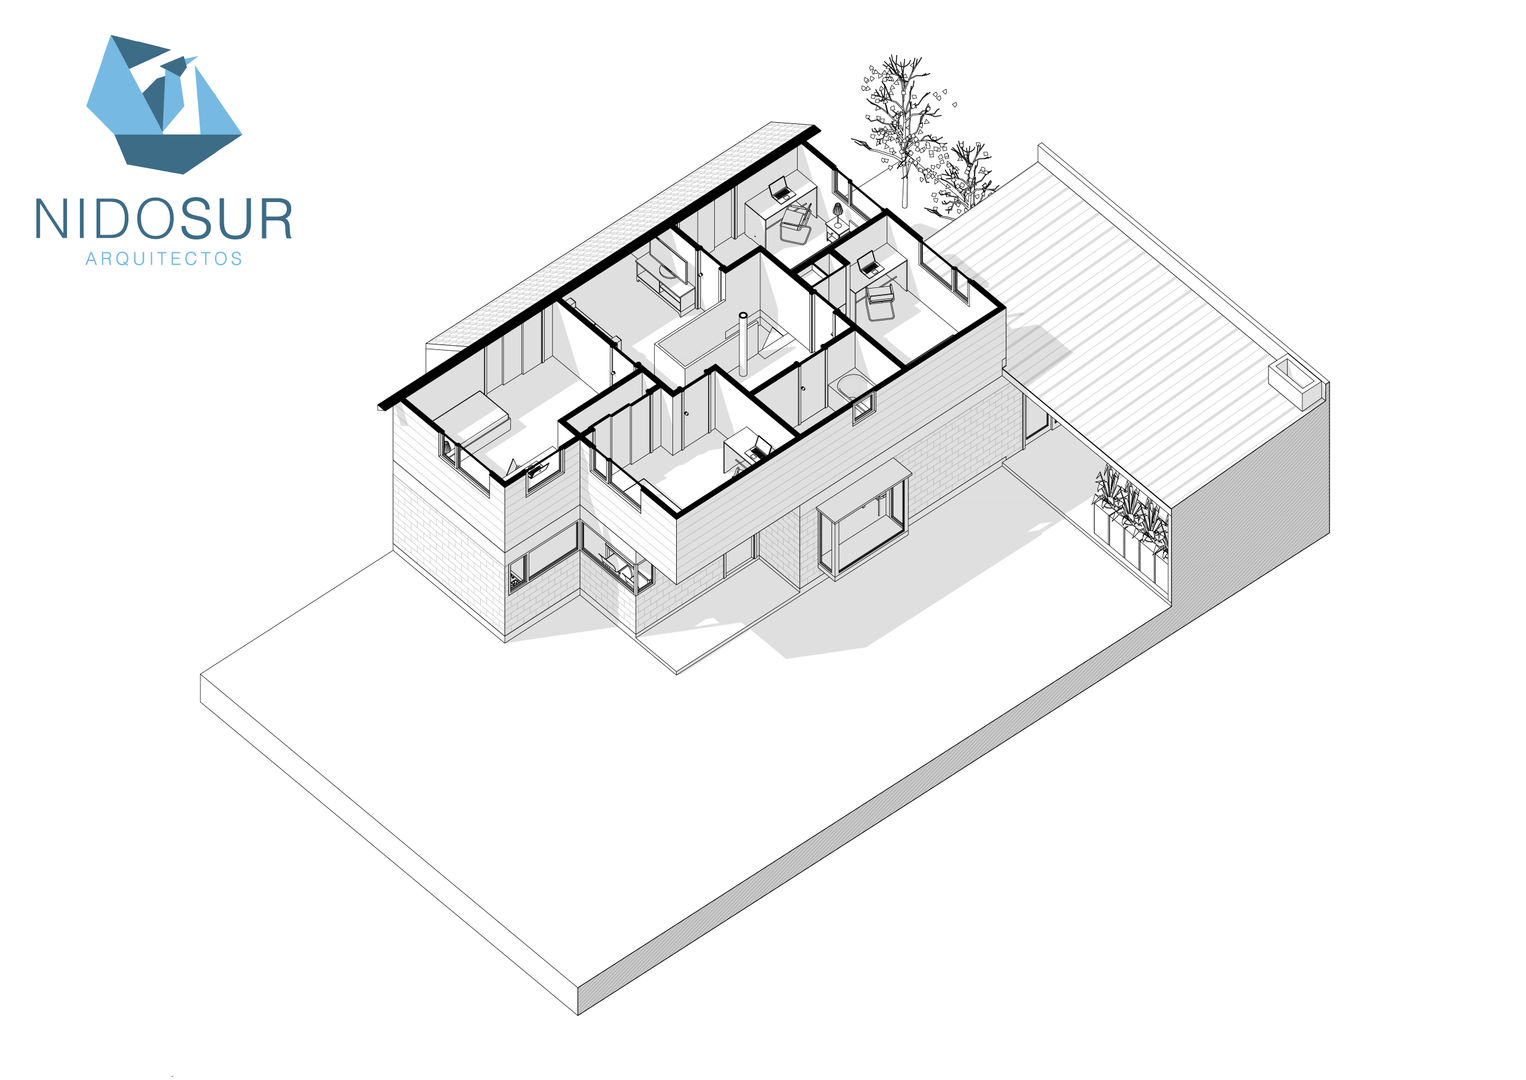 Remodelación y Ampliación de Casa MR2 en Valdivia por NidoSur Arquitectos, NidoSur Arquitectos - Valdivia NidoSur Arquitectos - Valdivia